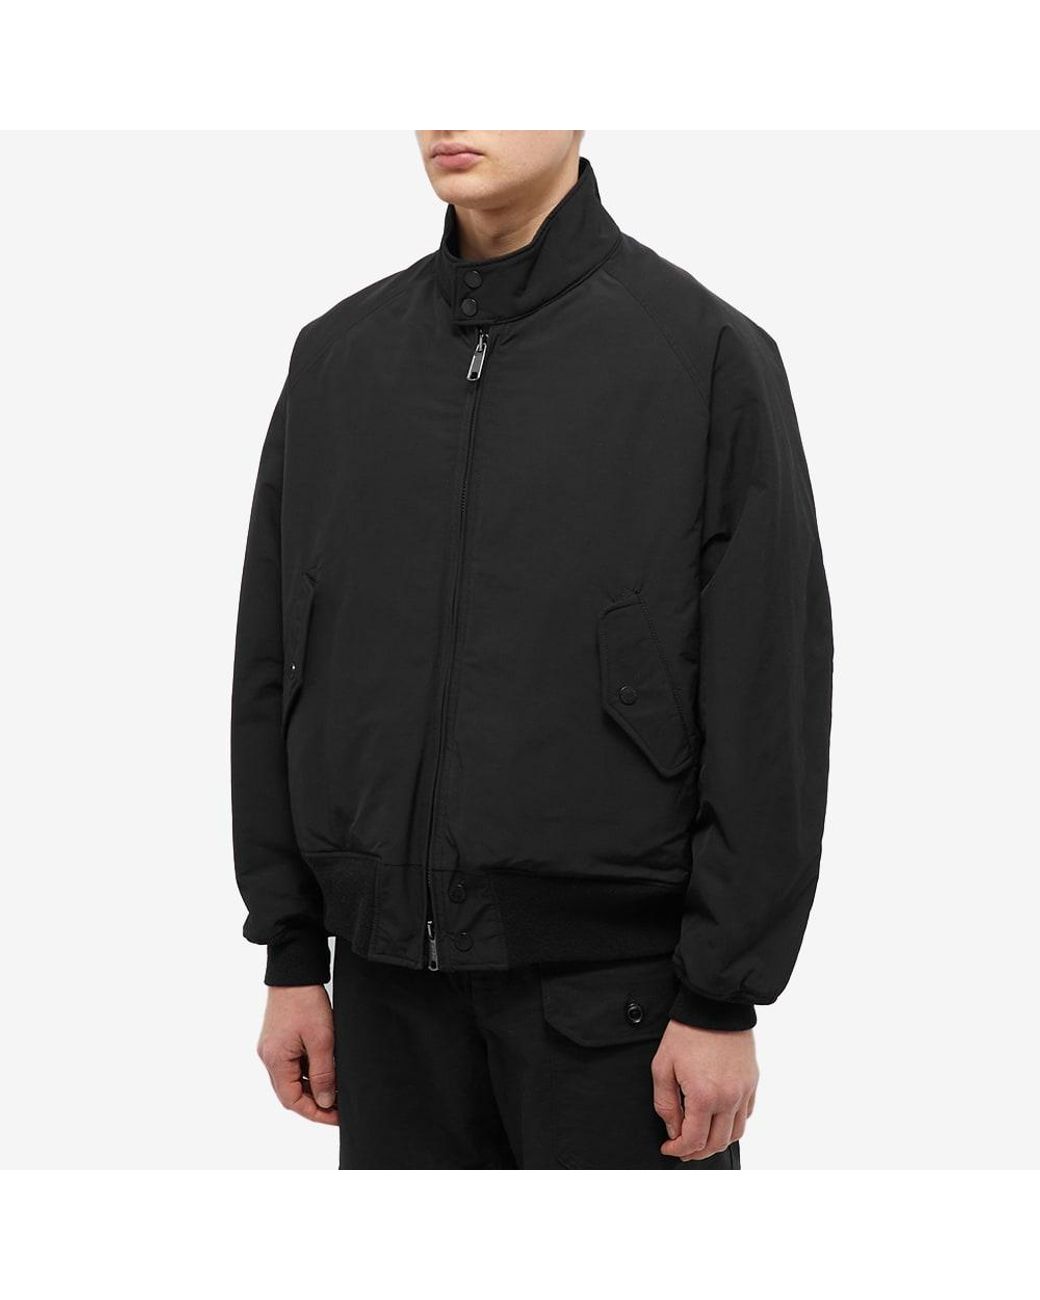 Baracuta X Engineered Garments G9 Ma1 Harrington Jacket in Black